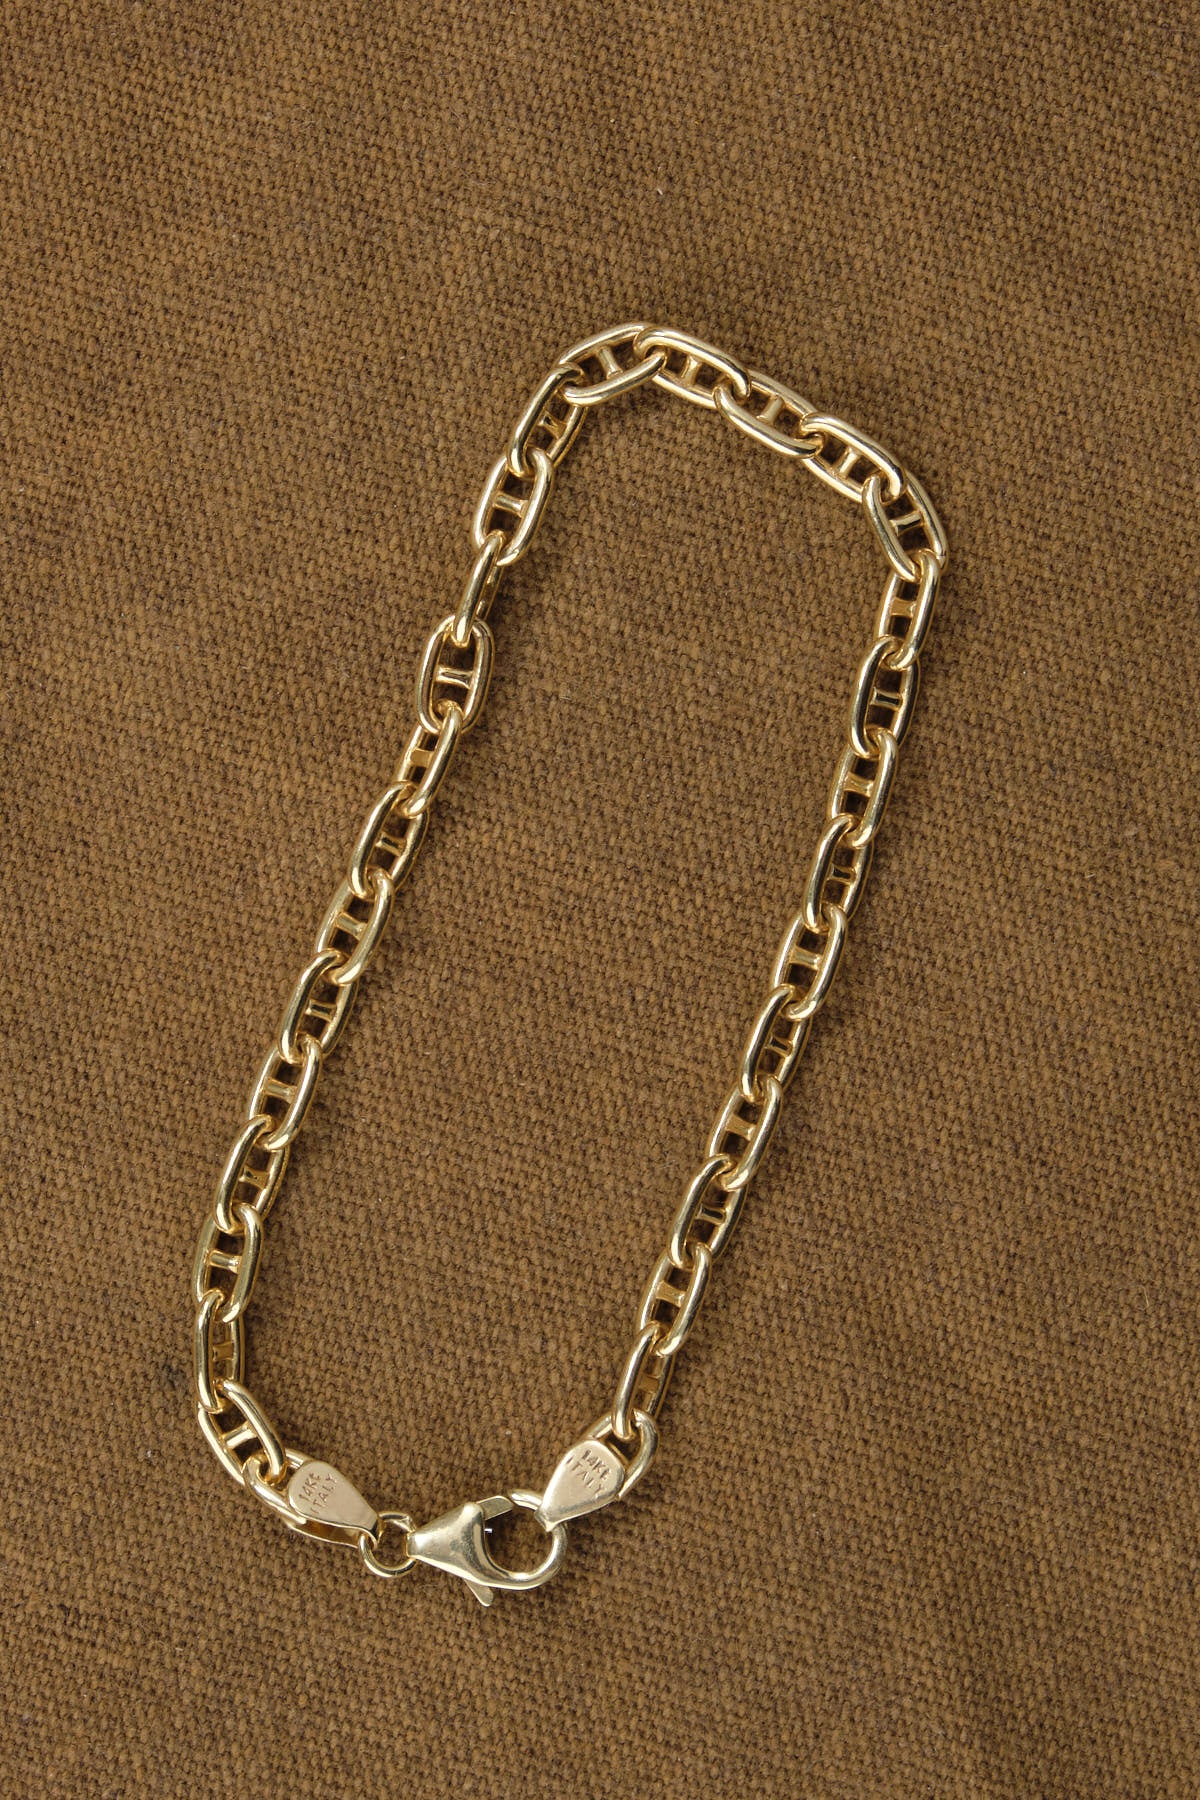 !4k Solid Gold Marine Link Bracelet 